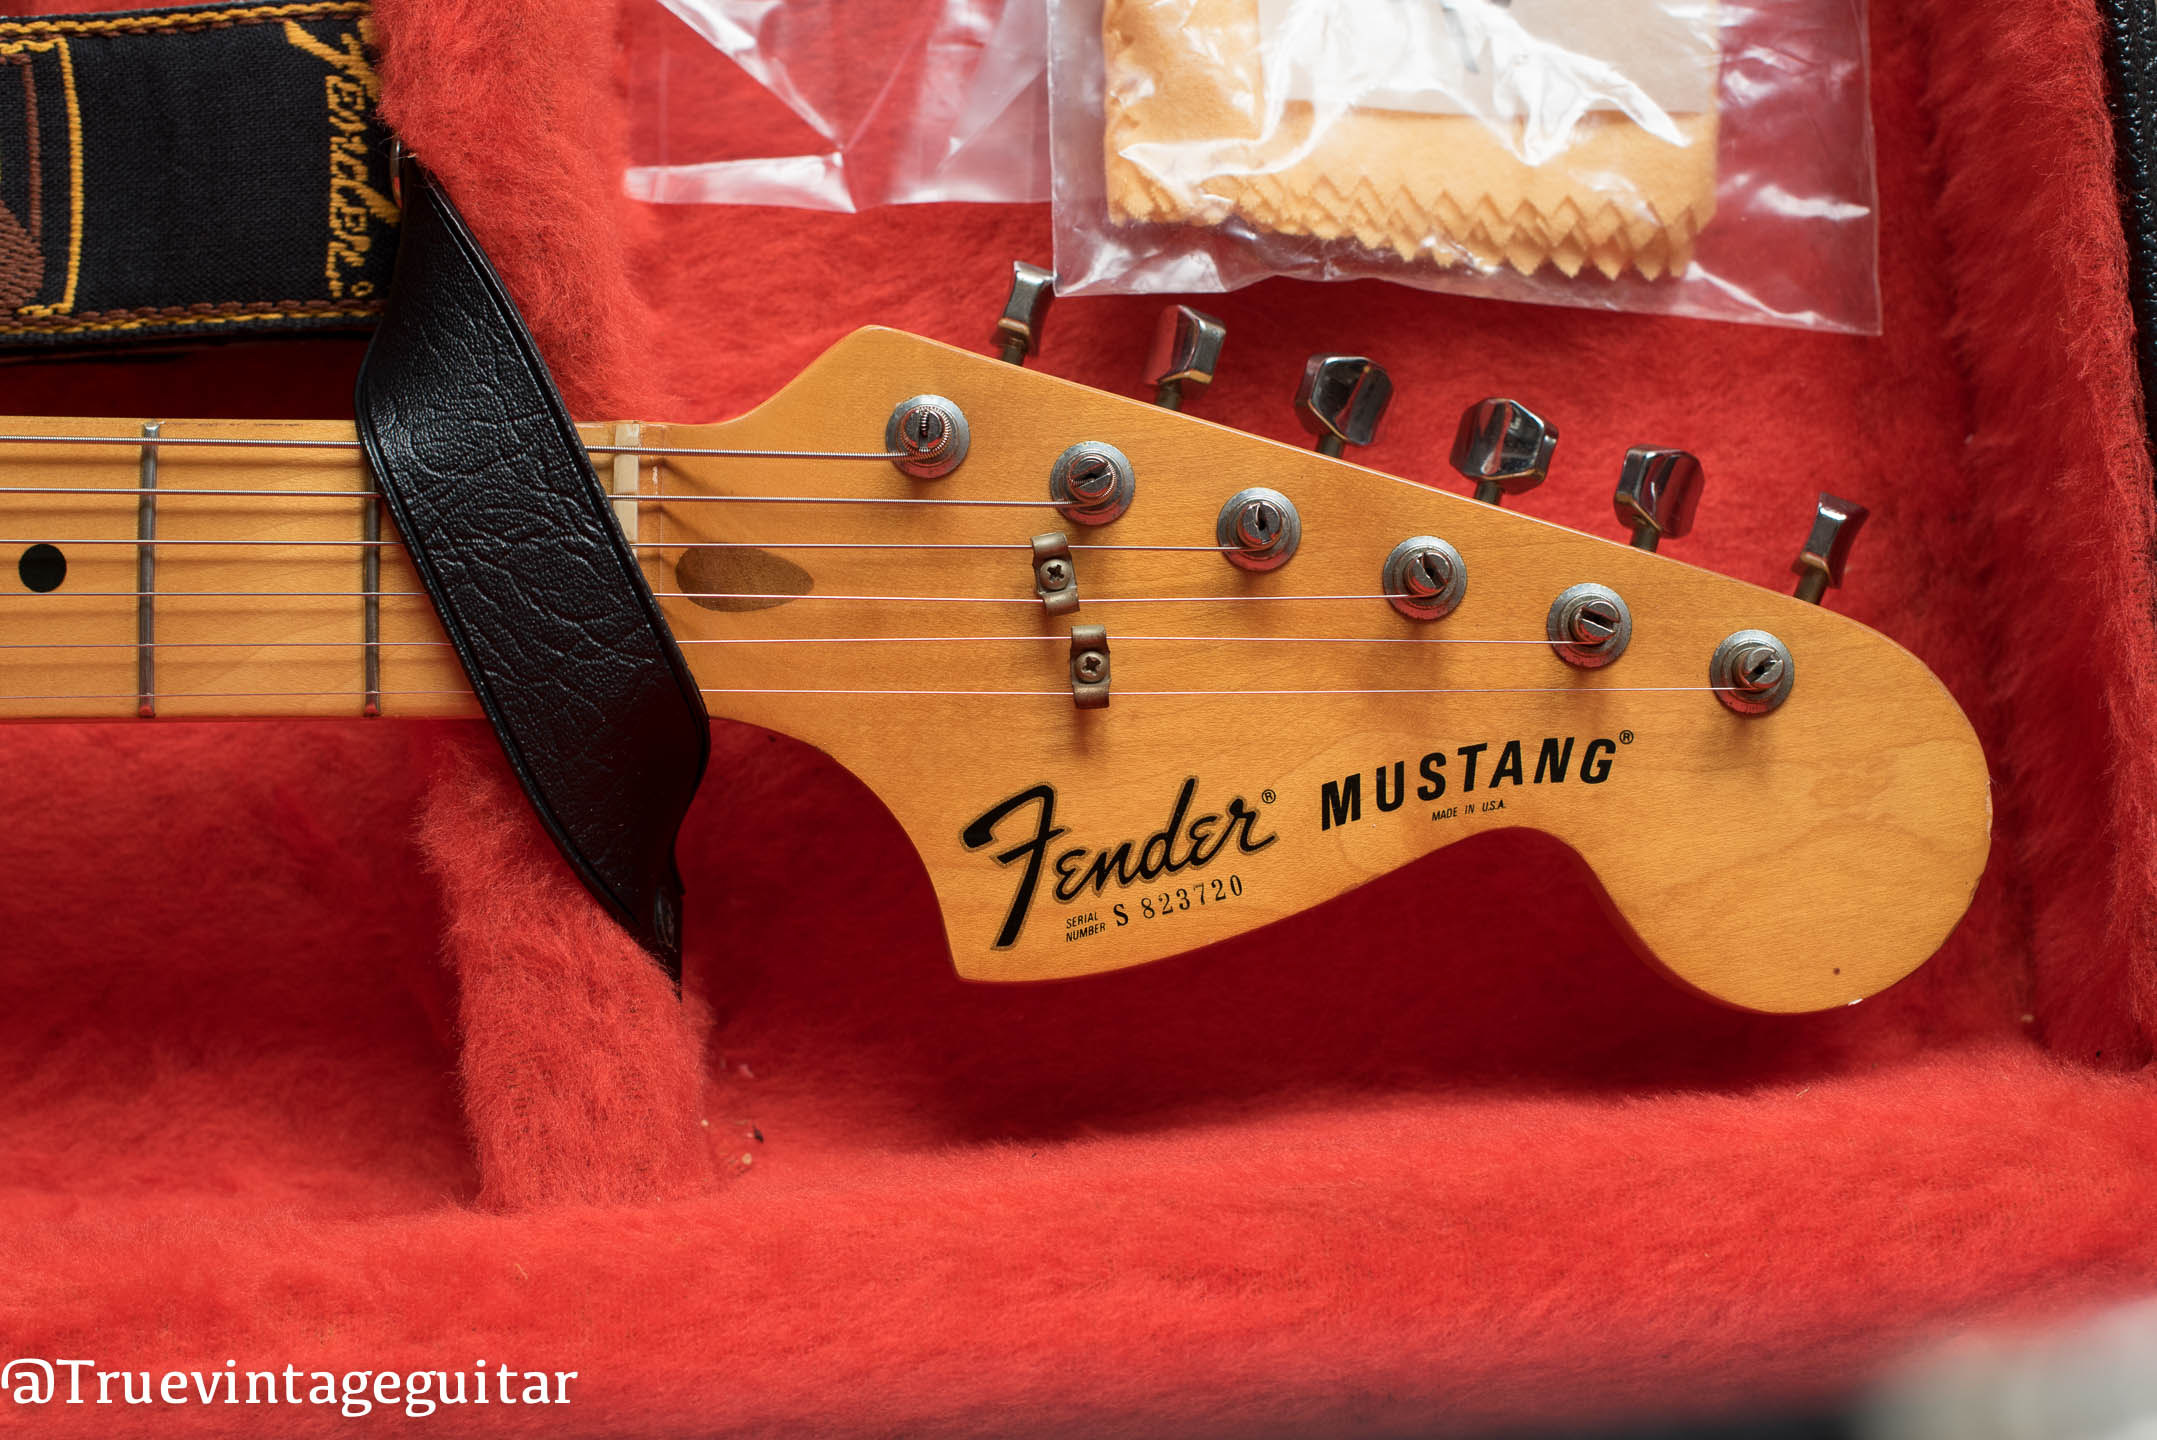 Vintage Fender Mustang headstock